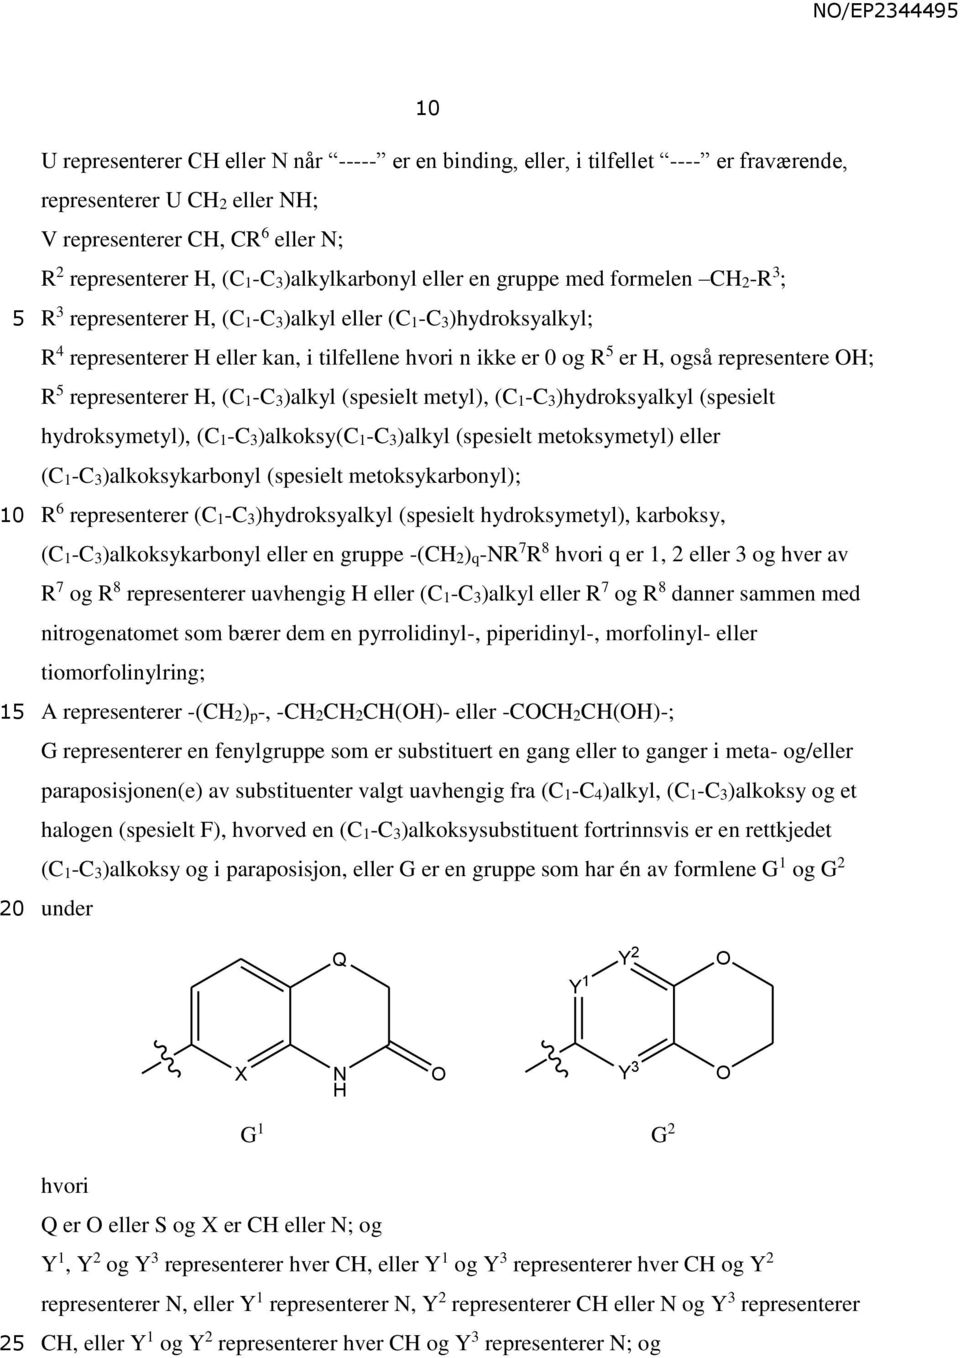 representerer H, (C1-C3)alkyl (spesielt metyl), (C1-C3)hydroksyalkyl (spesielt hydroksymetyl), (C1-C3)alkoksy(C1-C3)alkyl (spesielt metoksymetyl) eller (C1-C3)alkoksykarbonyl (spesielt